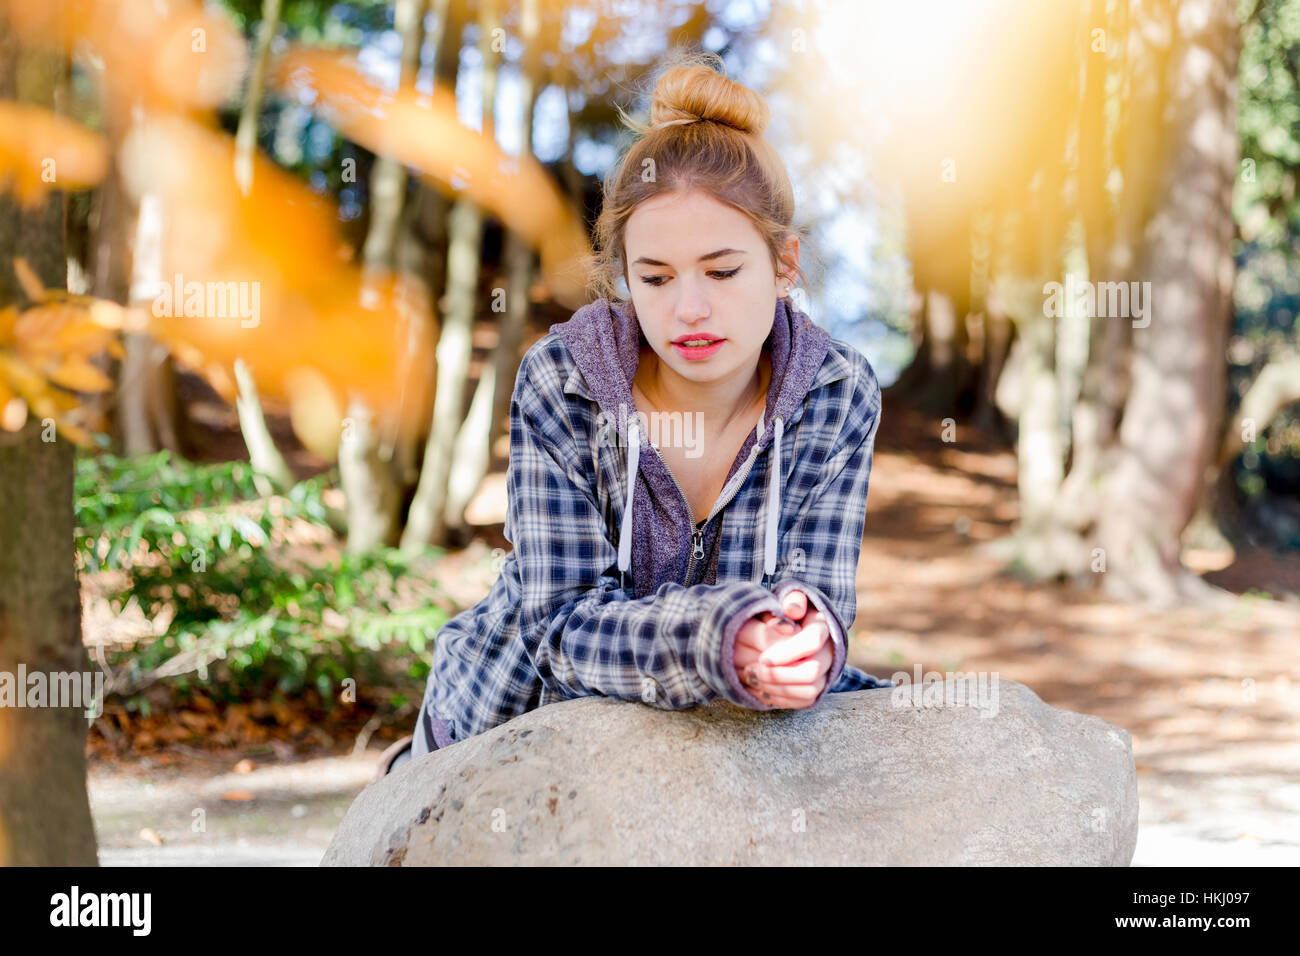 Este joven adolescente cuelga fuera solo en un parque, sentado sobre una roca en una posición desacoplada del pensamiento reflexivo para ella Foto de stock